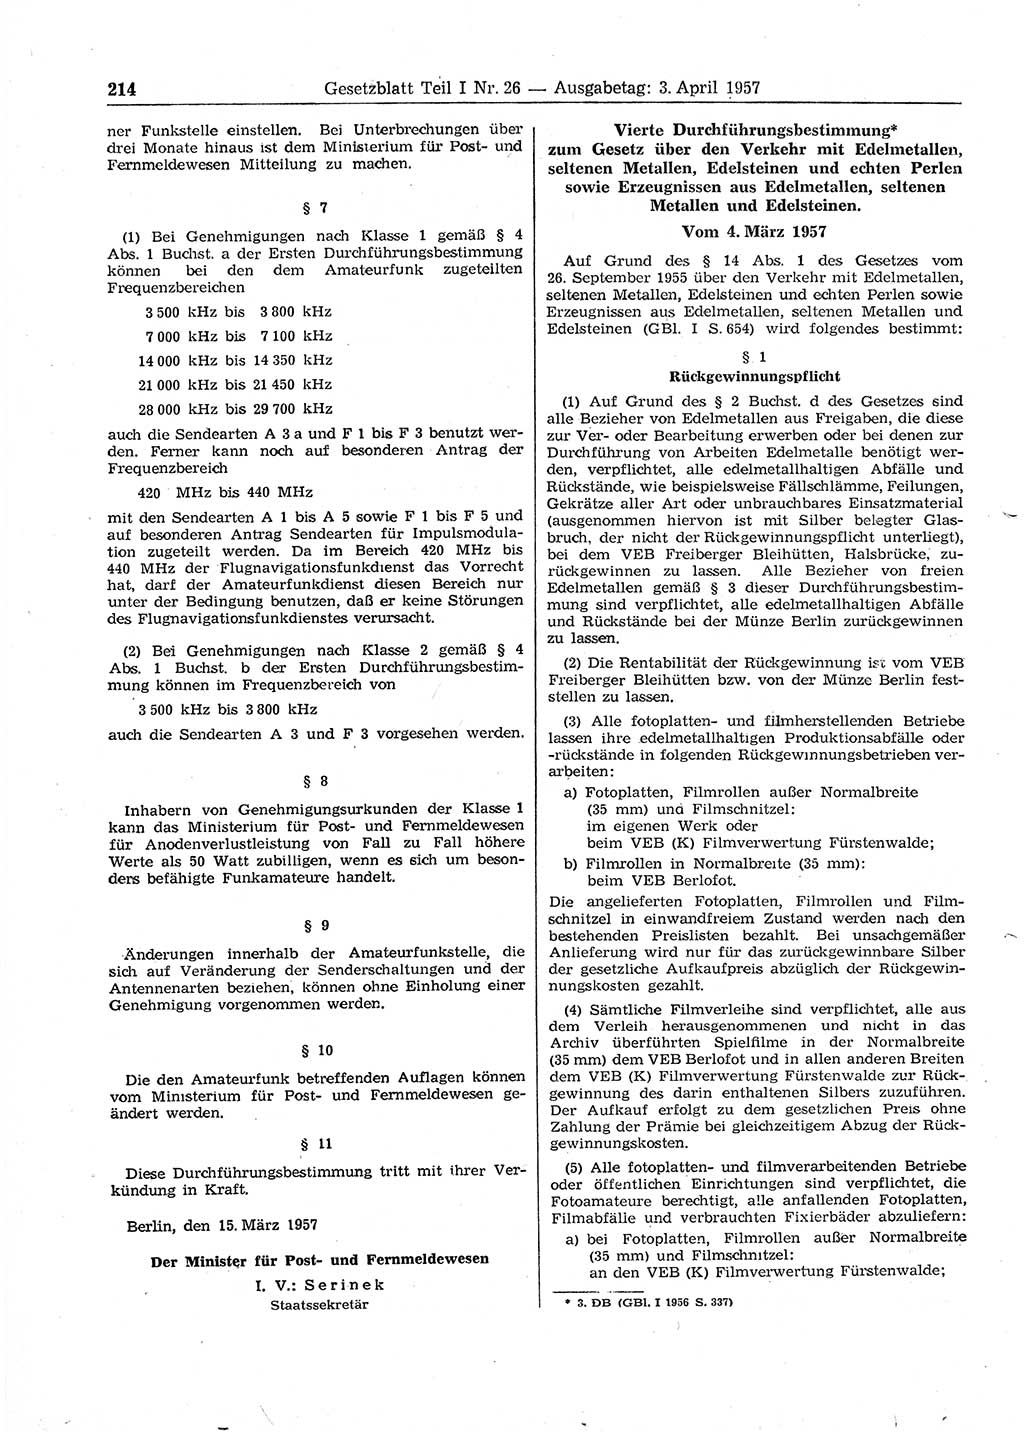 Gesetzblatt (GBl.) der Deutschen Demokratischen Republik (DDR) Teil Ⅰ 1957, Seite 214 (GBl. DDR Ⅰ 1957, S. 214)